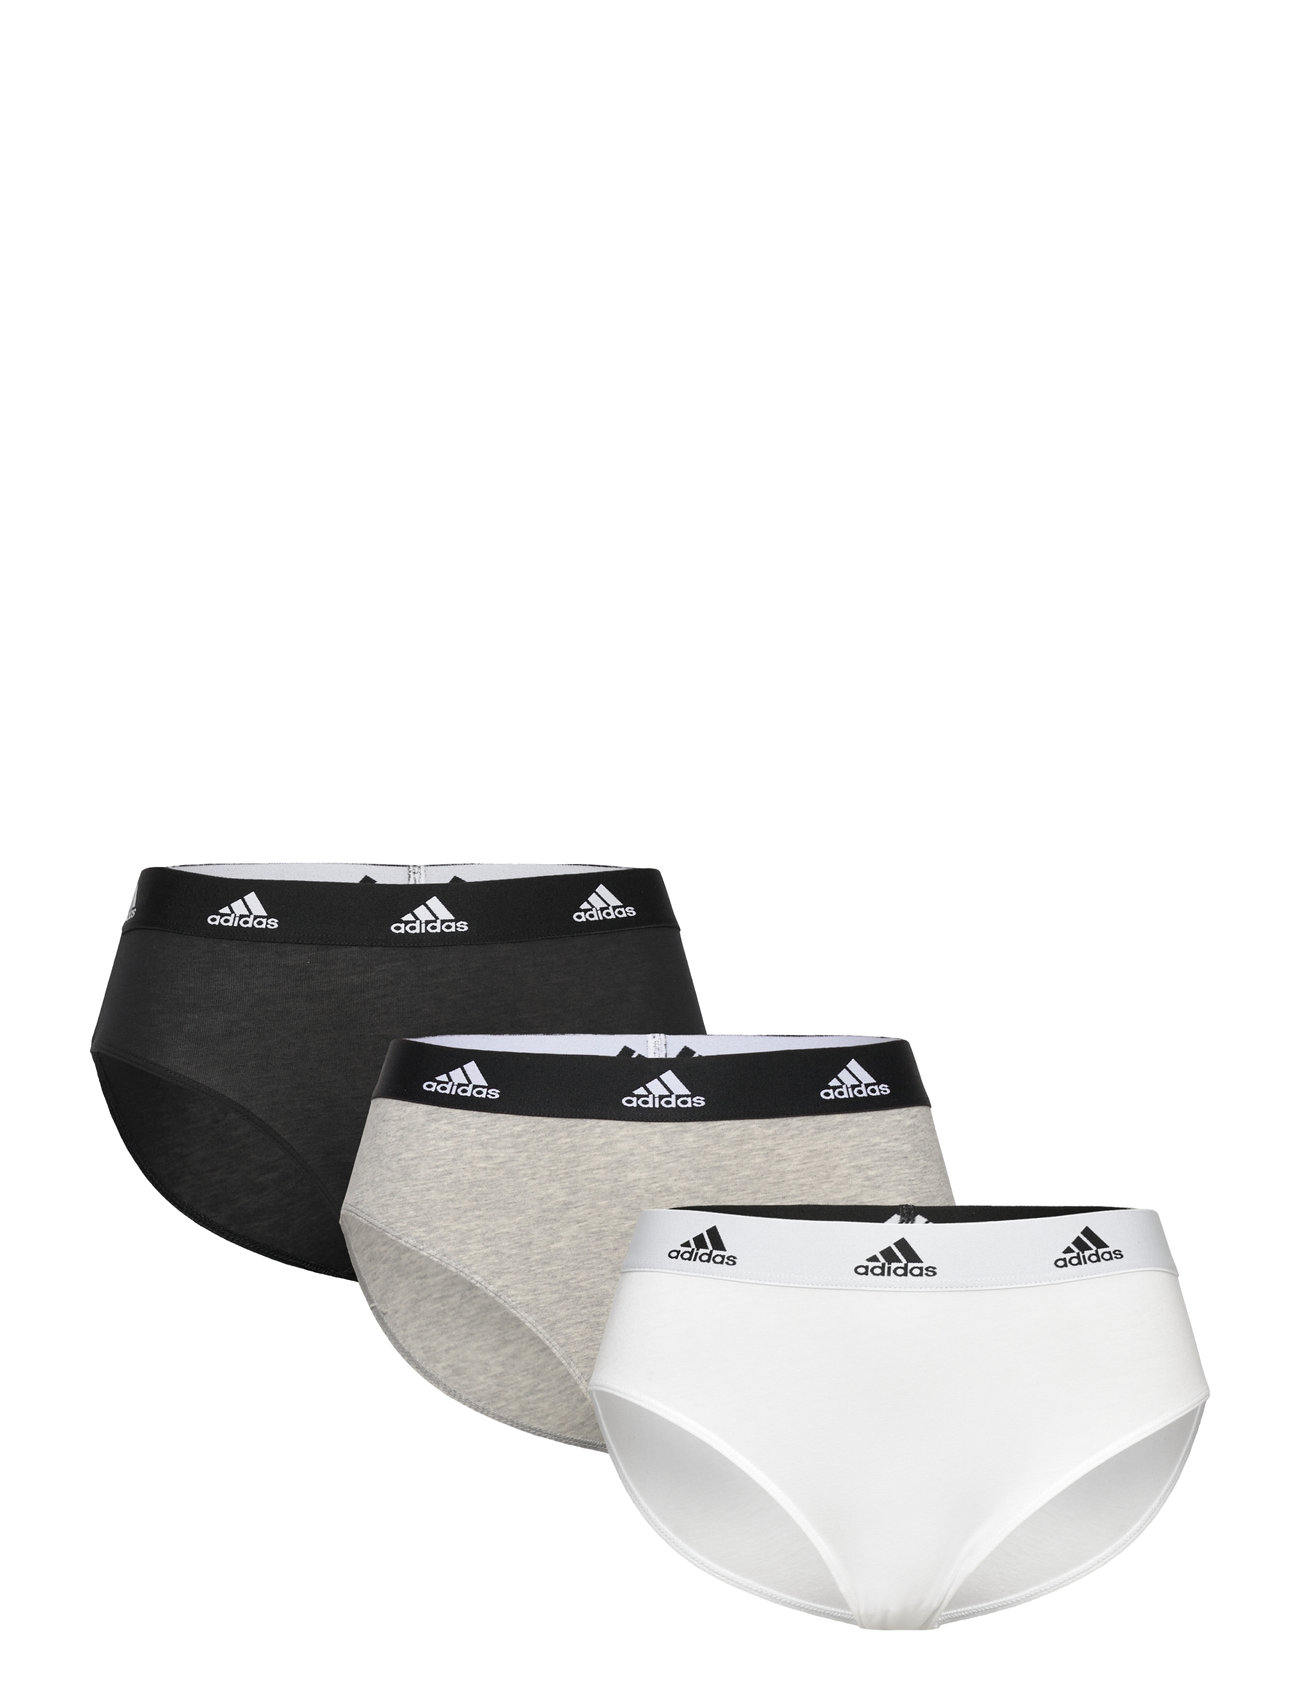 Brief Sport Panties Briefs Multi/patterned Adidas Underwear